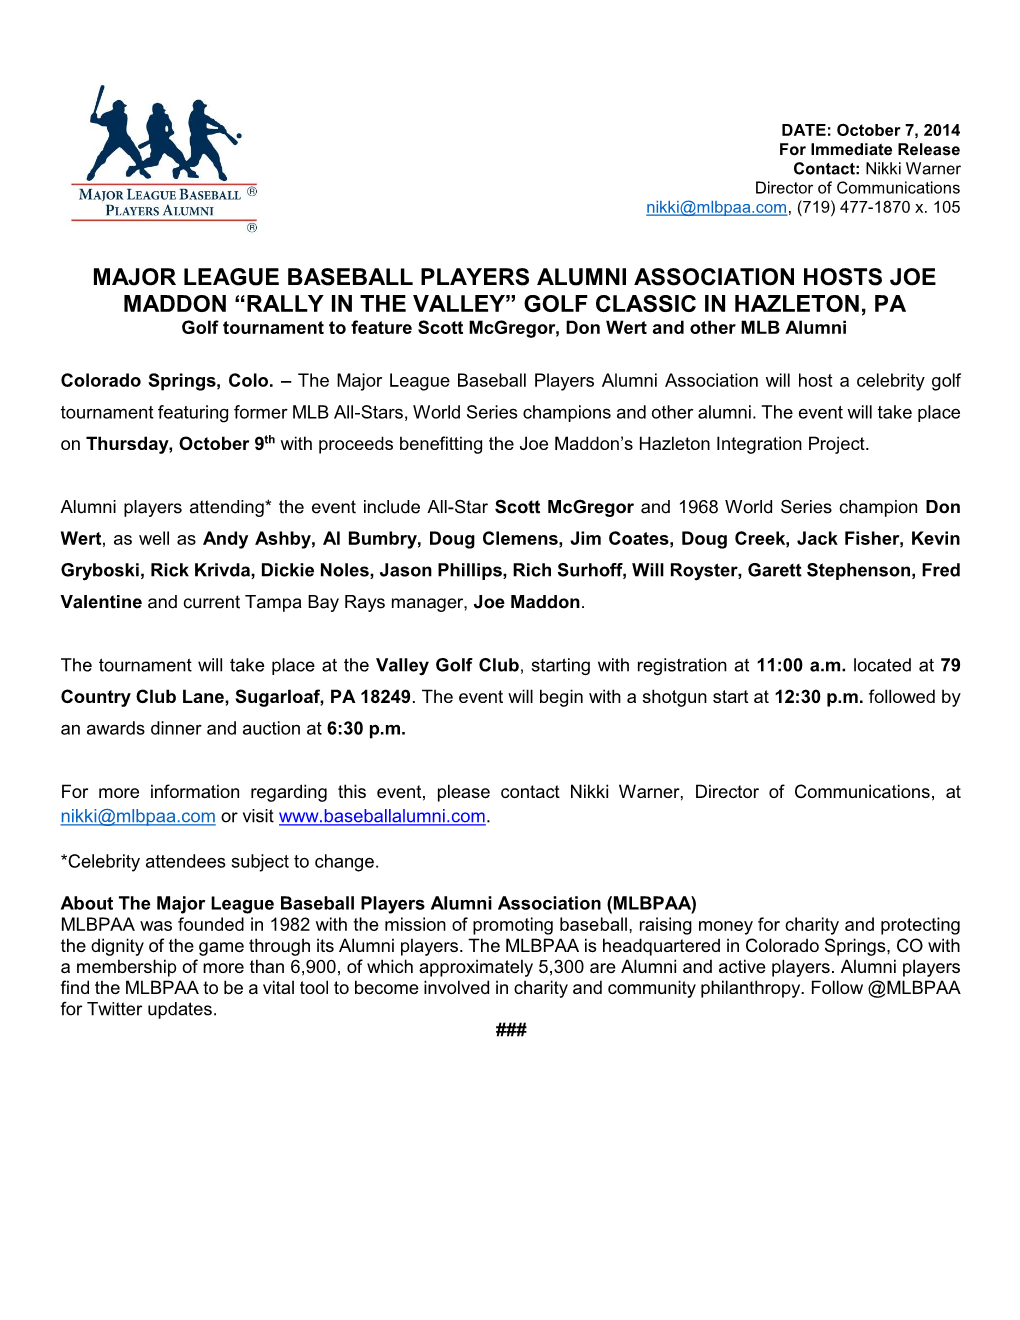 Major League Baseball Players Alumni Association Hosts Joe Maddon